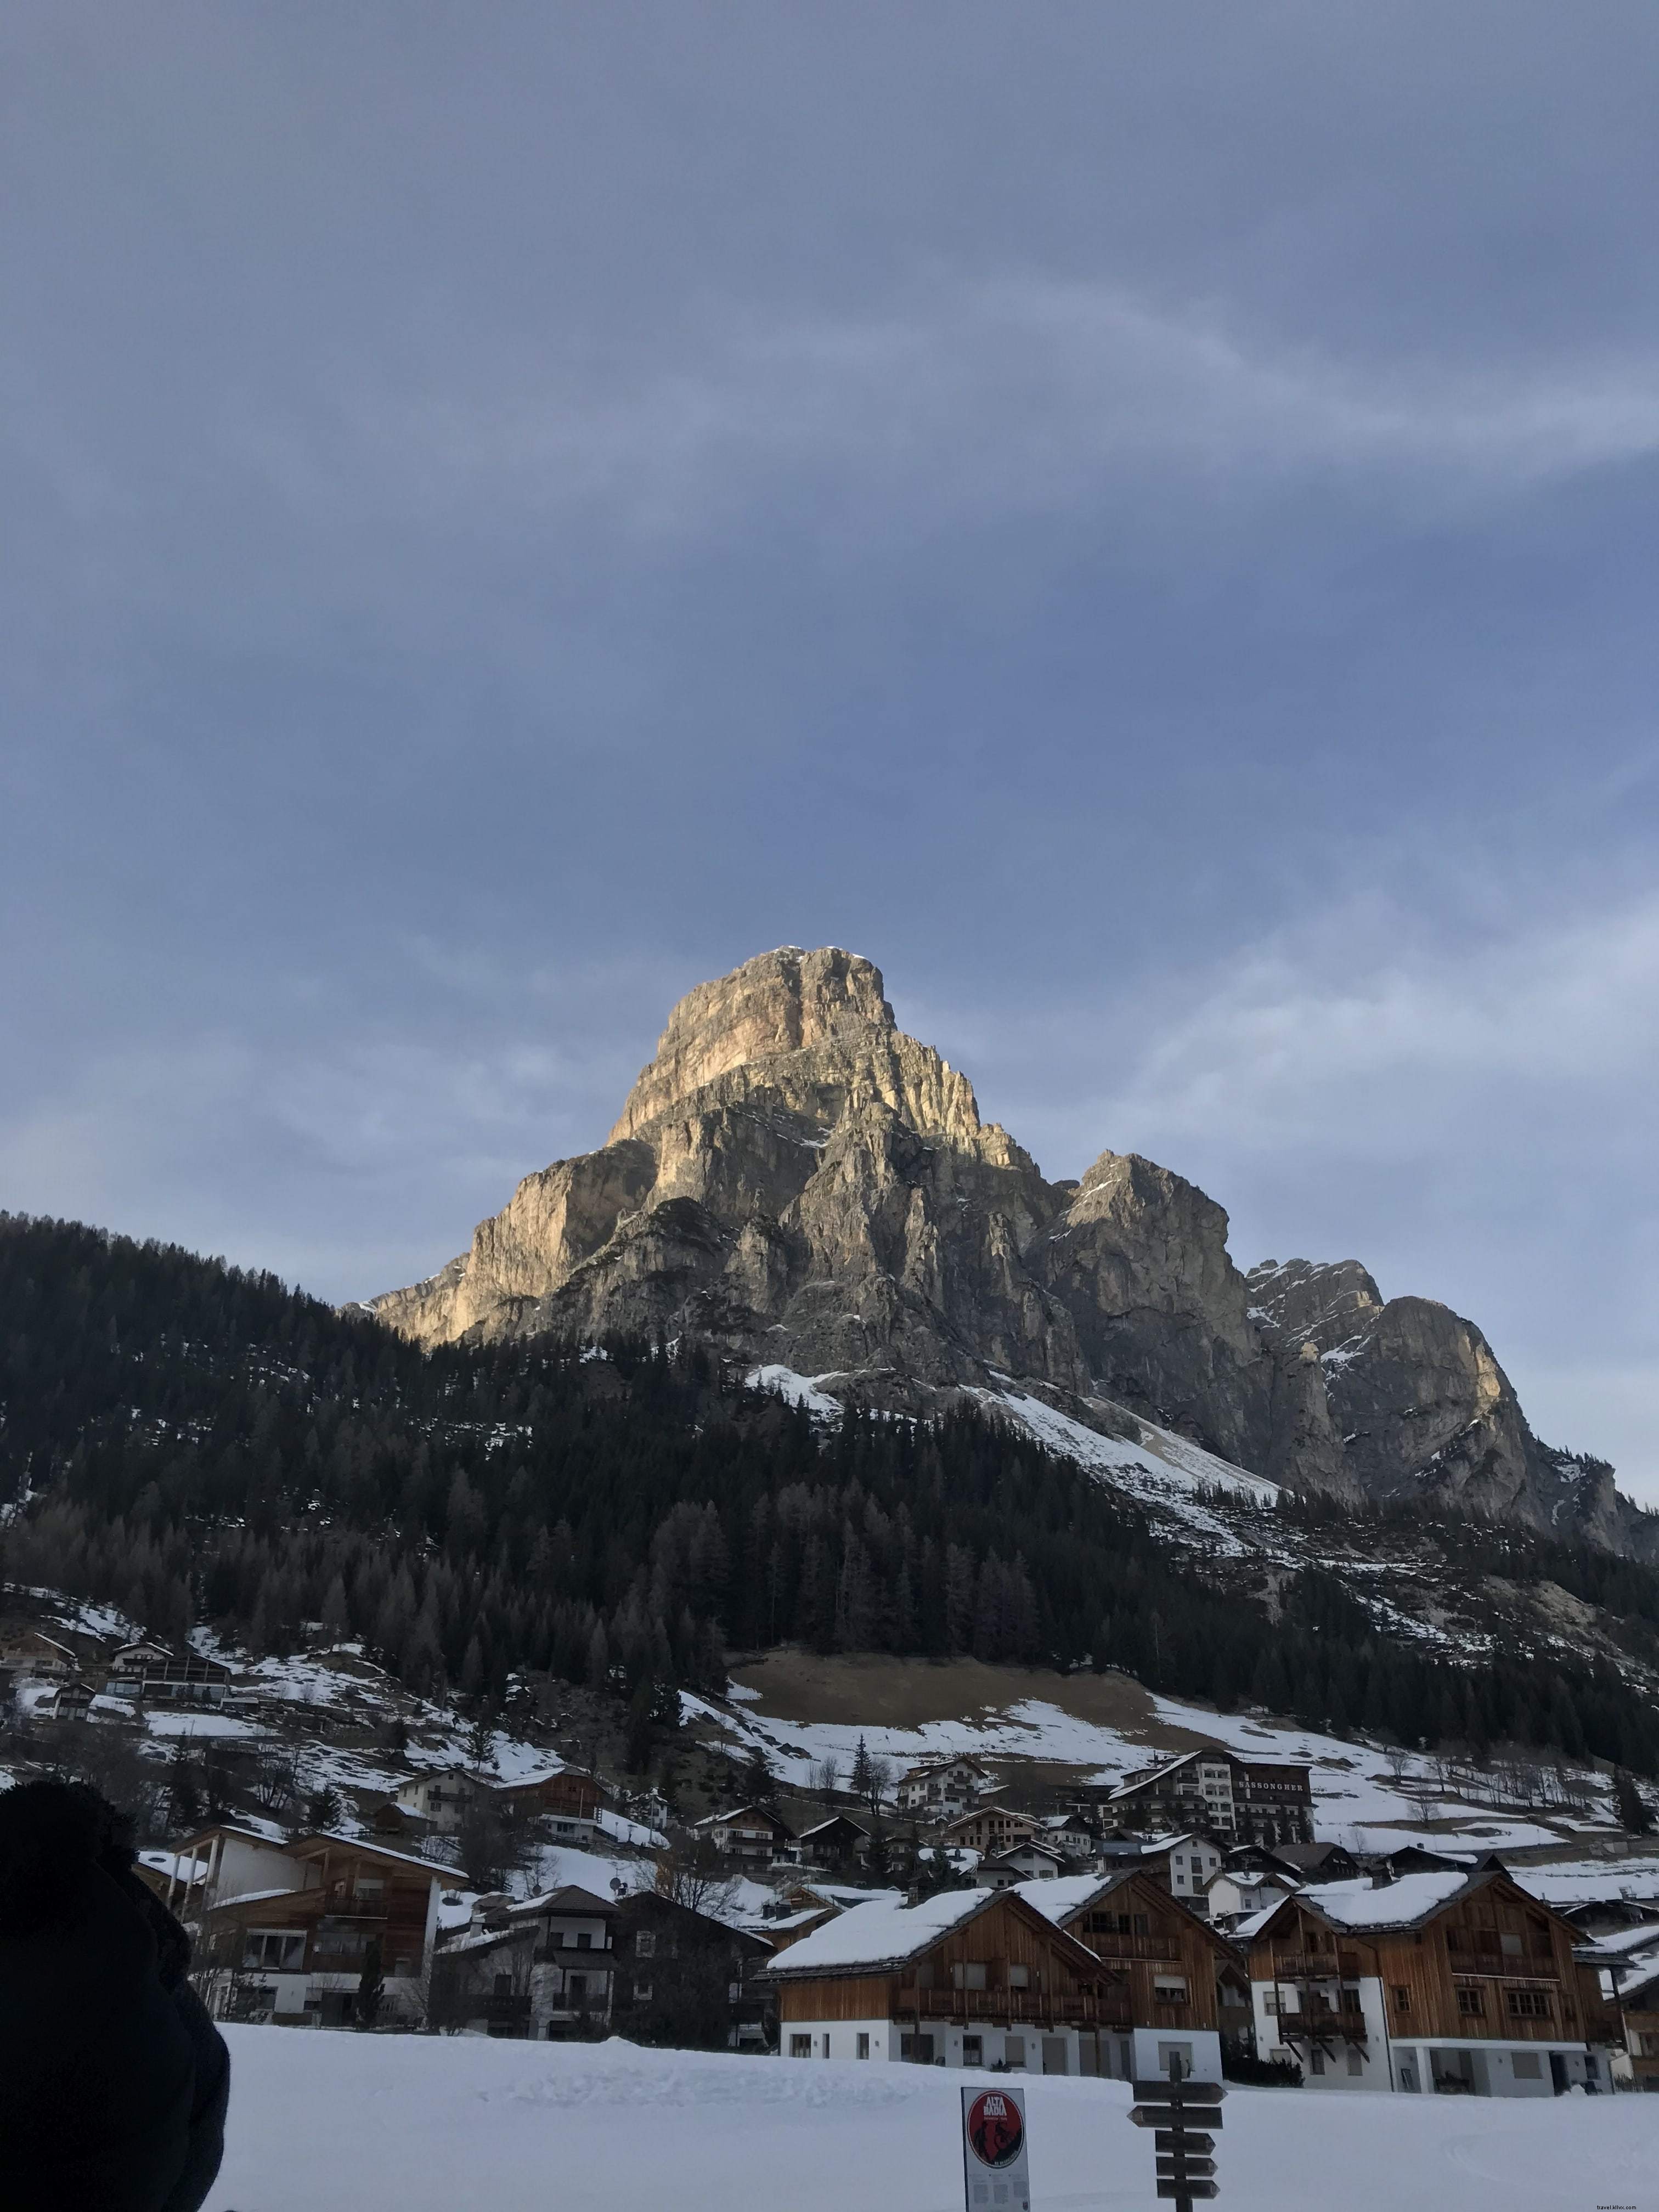 Atap Tertutup Salju Dengan Gunung Besar Di Belakang Mereka Foto 